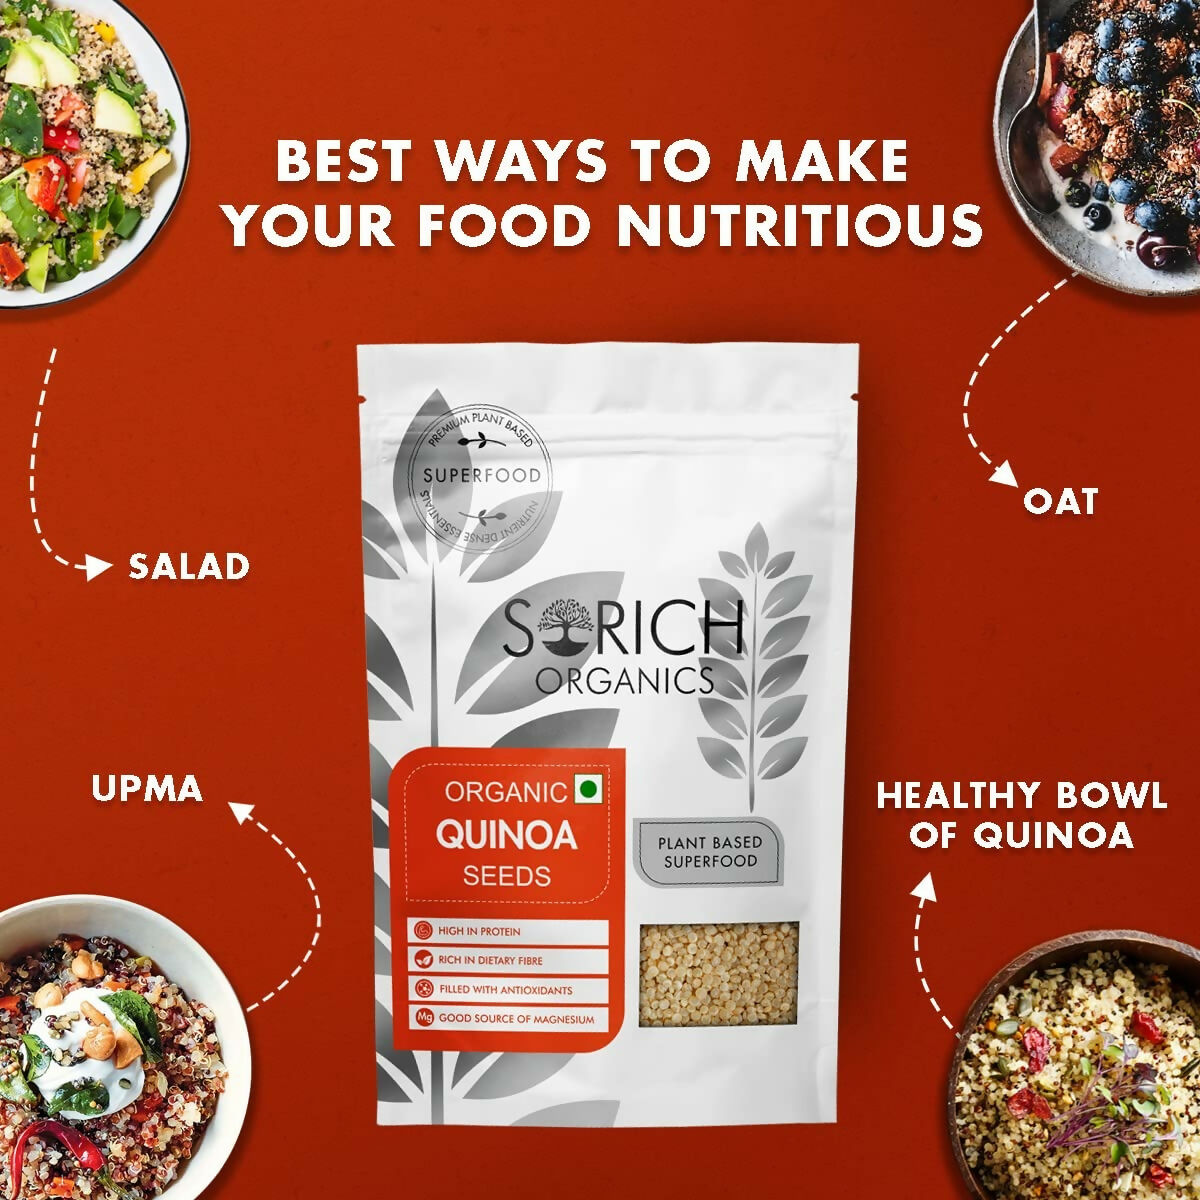 Sorich Organics Raw Quinoa Seeds - Distacart